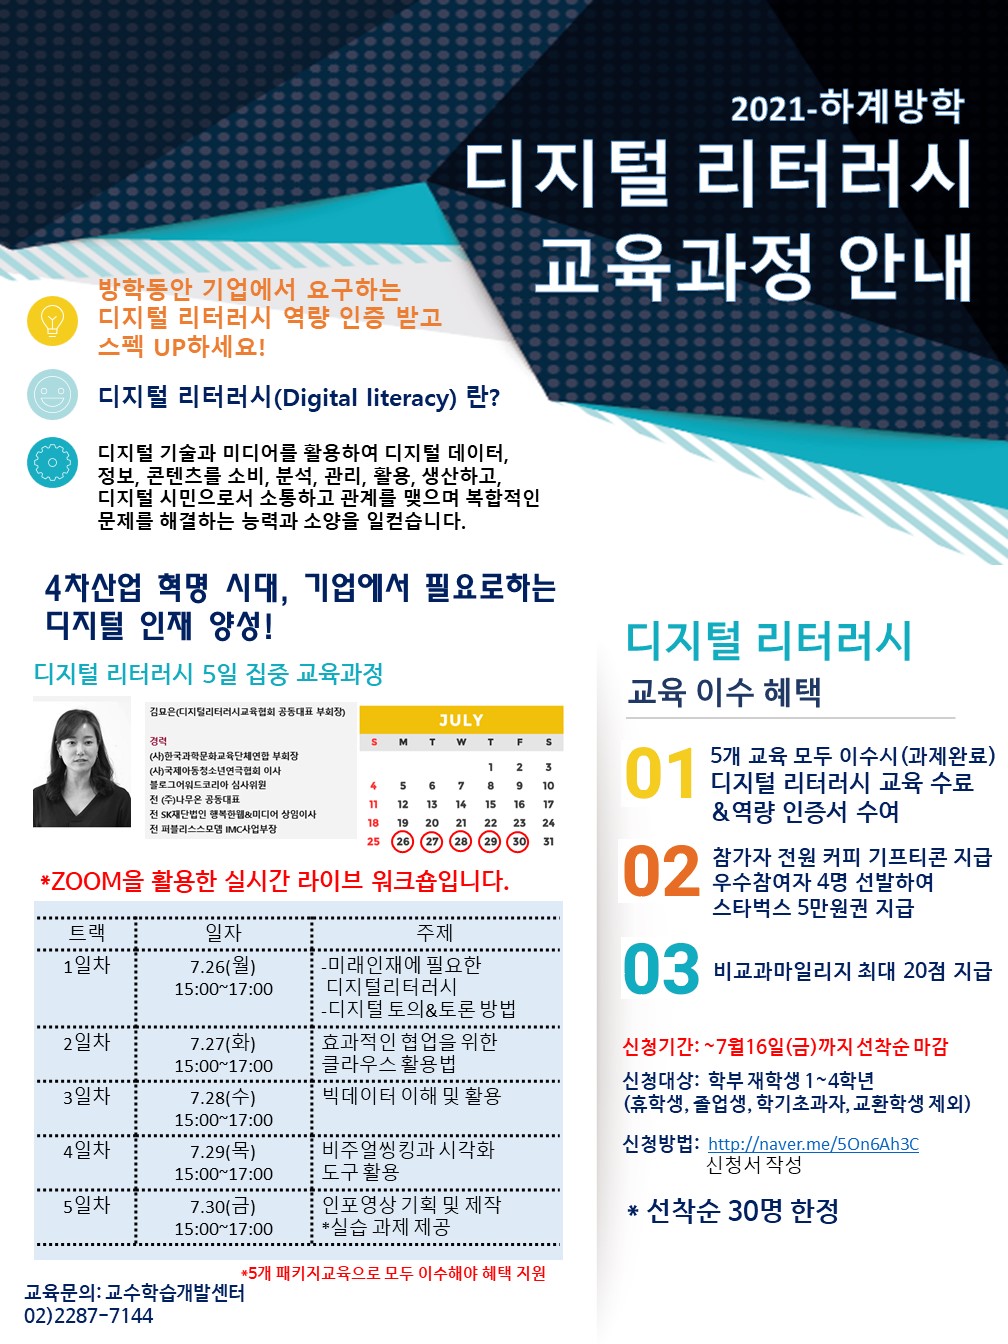 [서울] 하계방학 디지털리터러시 교육과정  이수 안내(선착순 30명)